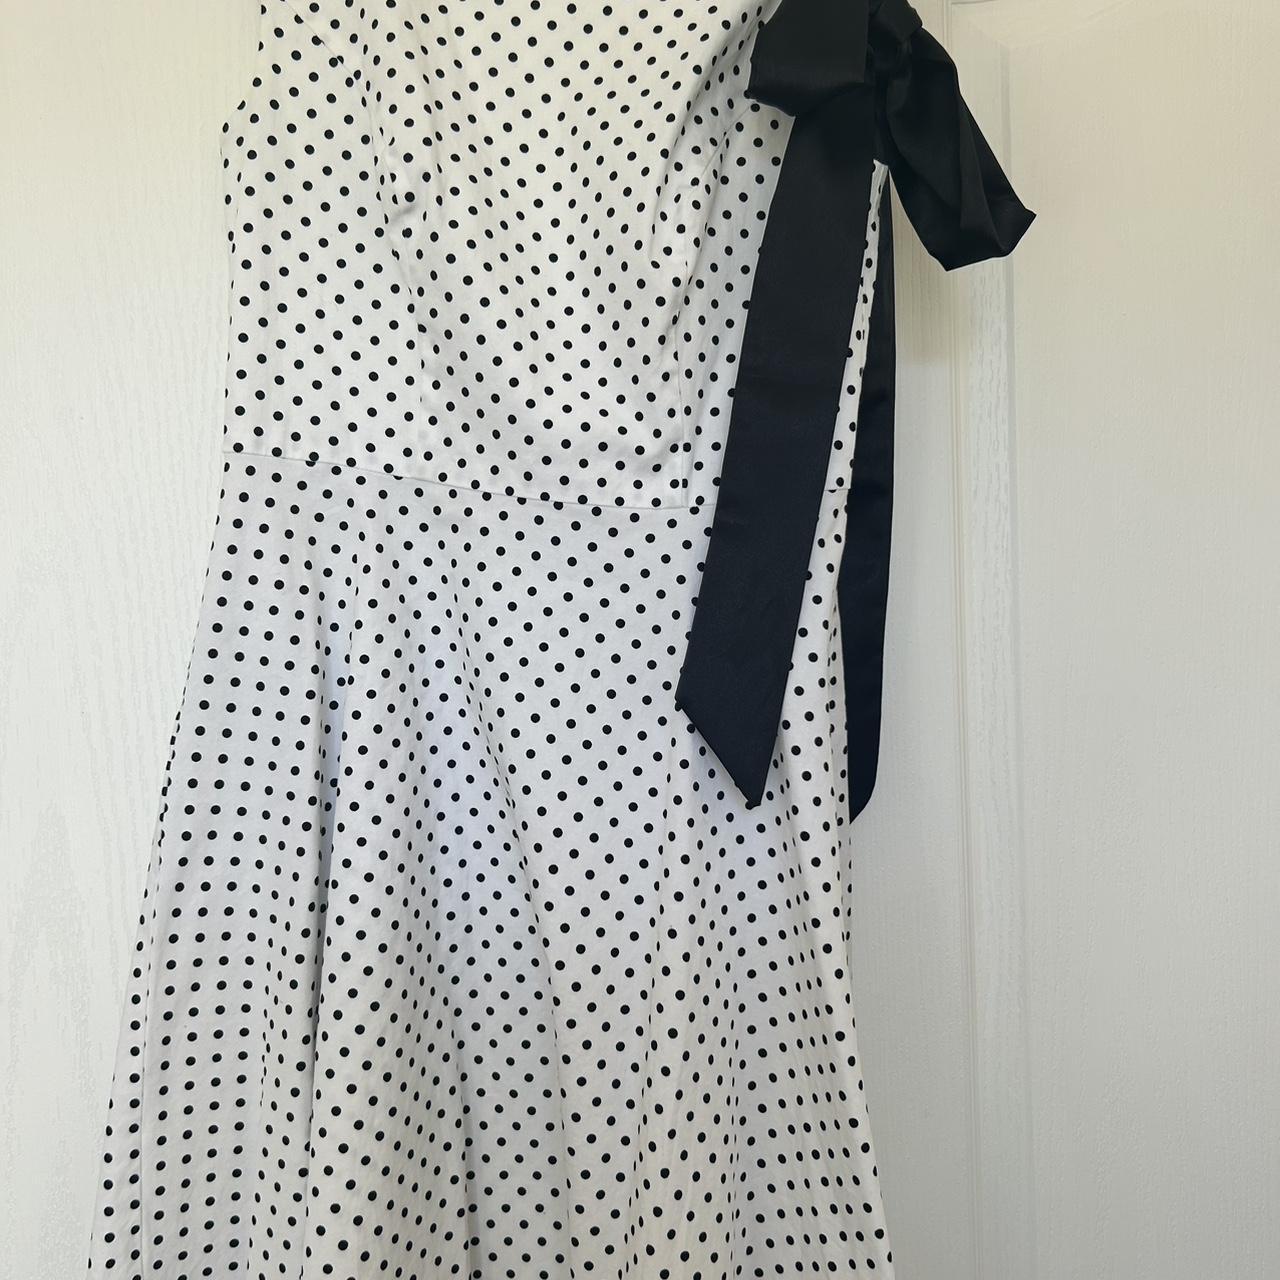 Vintage polka dot knee length dress - Depop